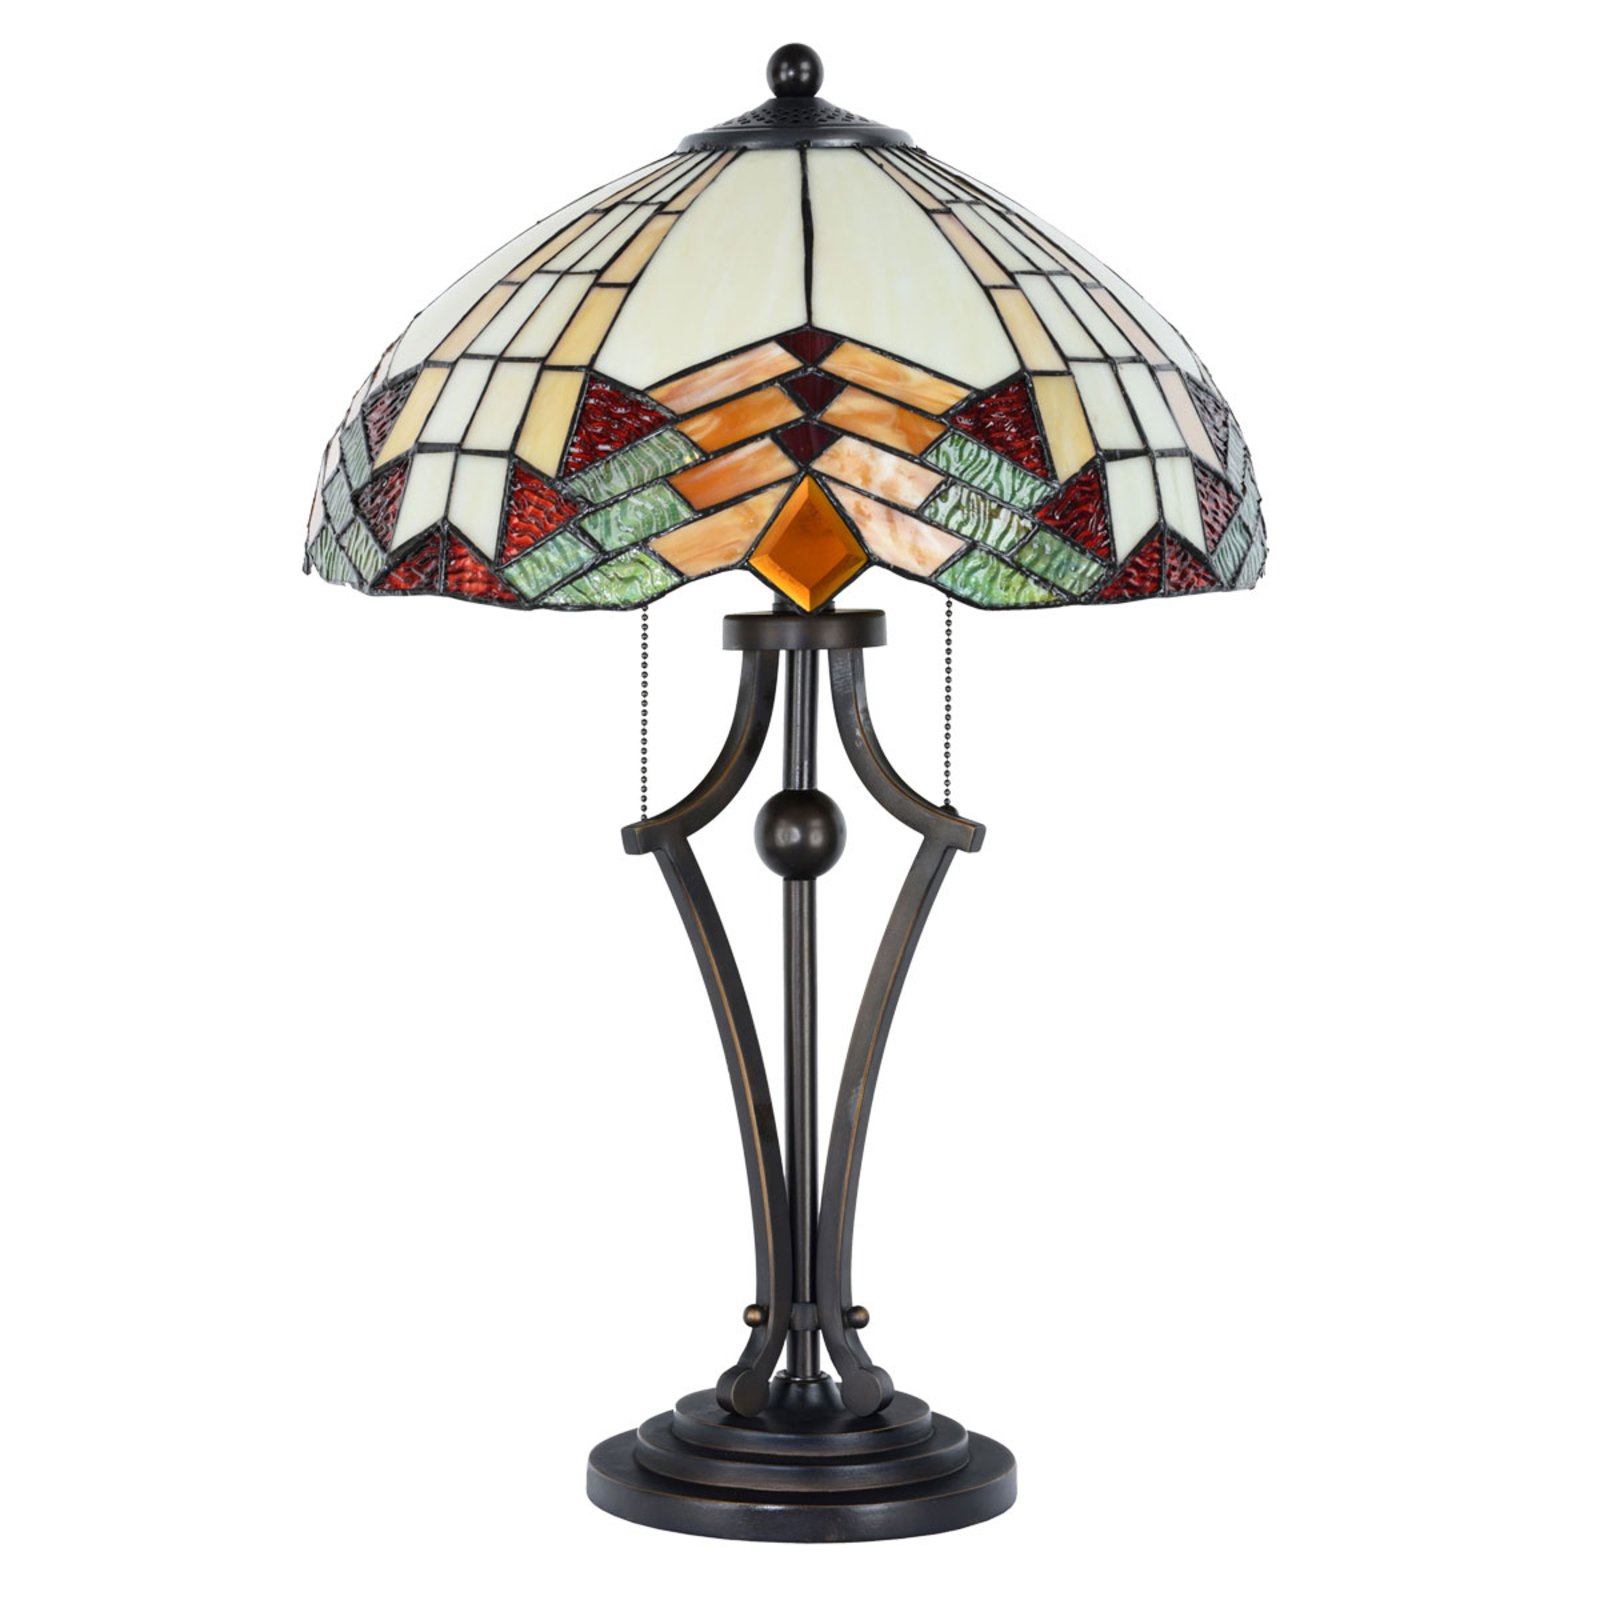 Tiffany išvaizdos stalinė lempa 5961 su spalvotu stiklu